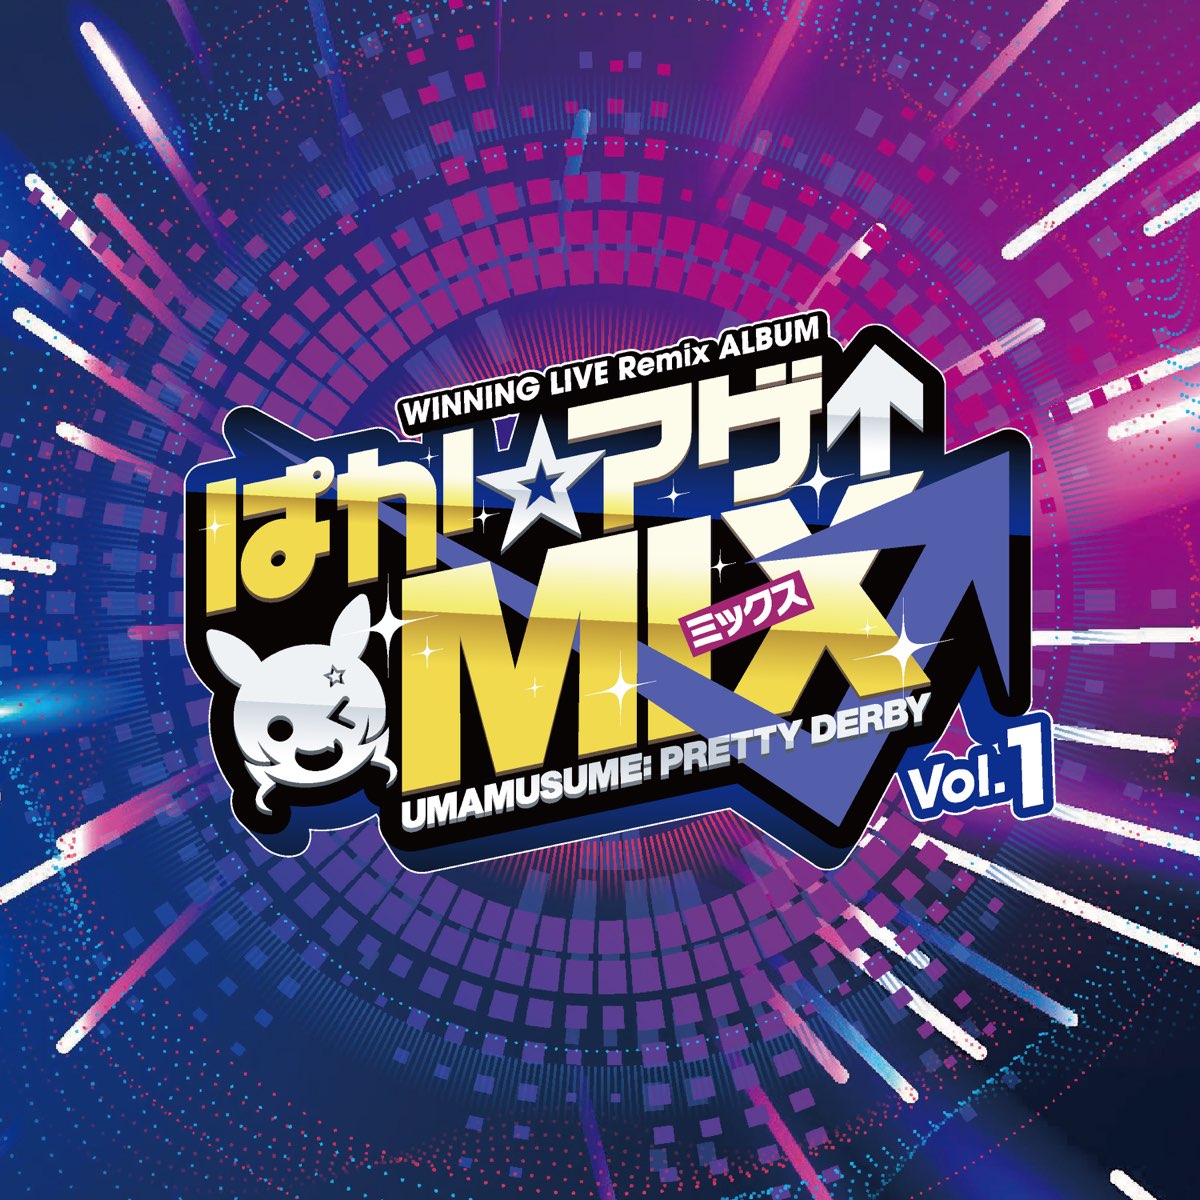 WINNING LIVE Remix ALBUM "Paka☆Age↑Mix" Vol.1